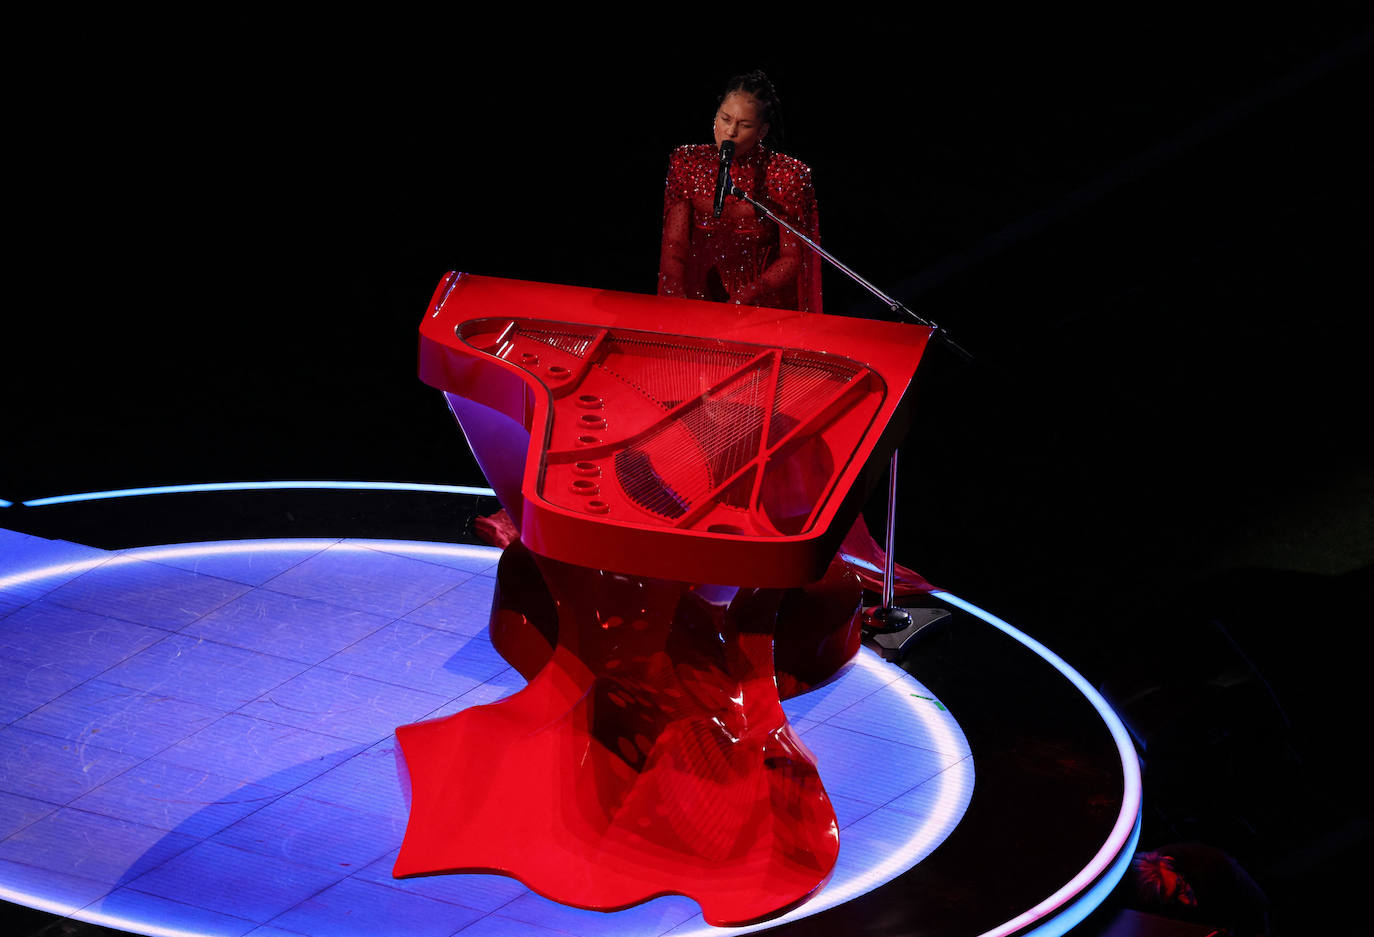 La cantante Alicia Keys se sumó a las actuaciones que convirtieron el descanso de la Super Bowl LVIII en uno de los shows más espectaculares que se han visto en mucho tiempo.